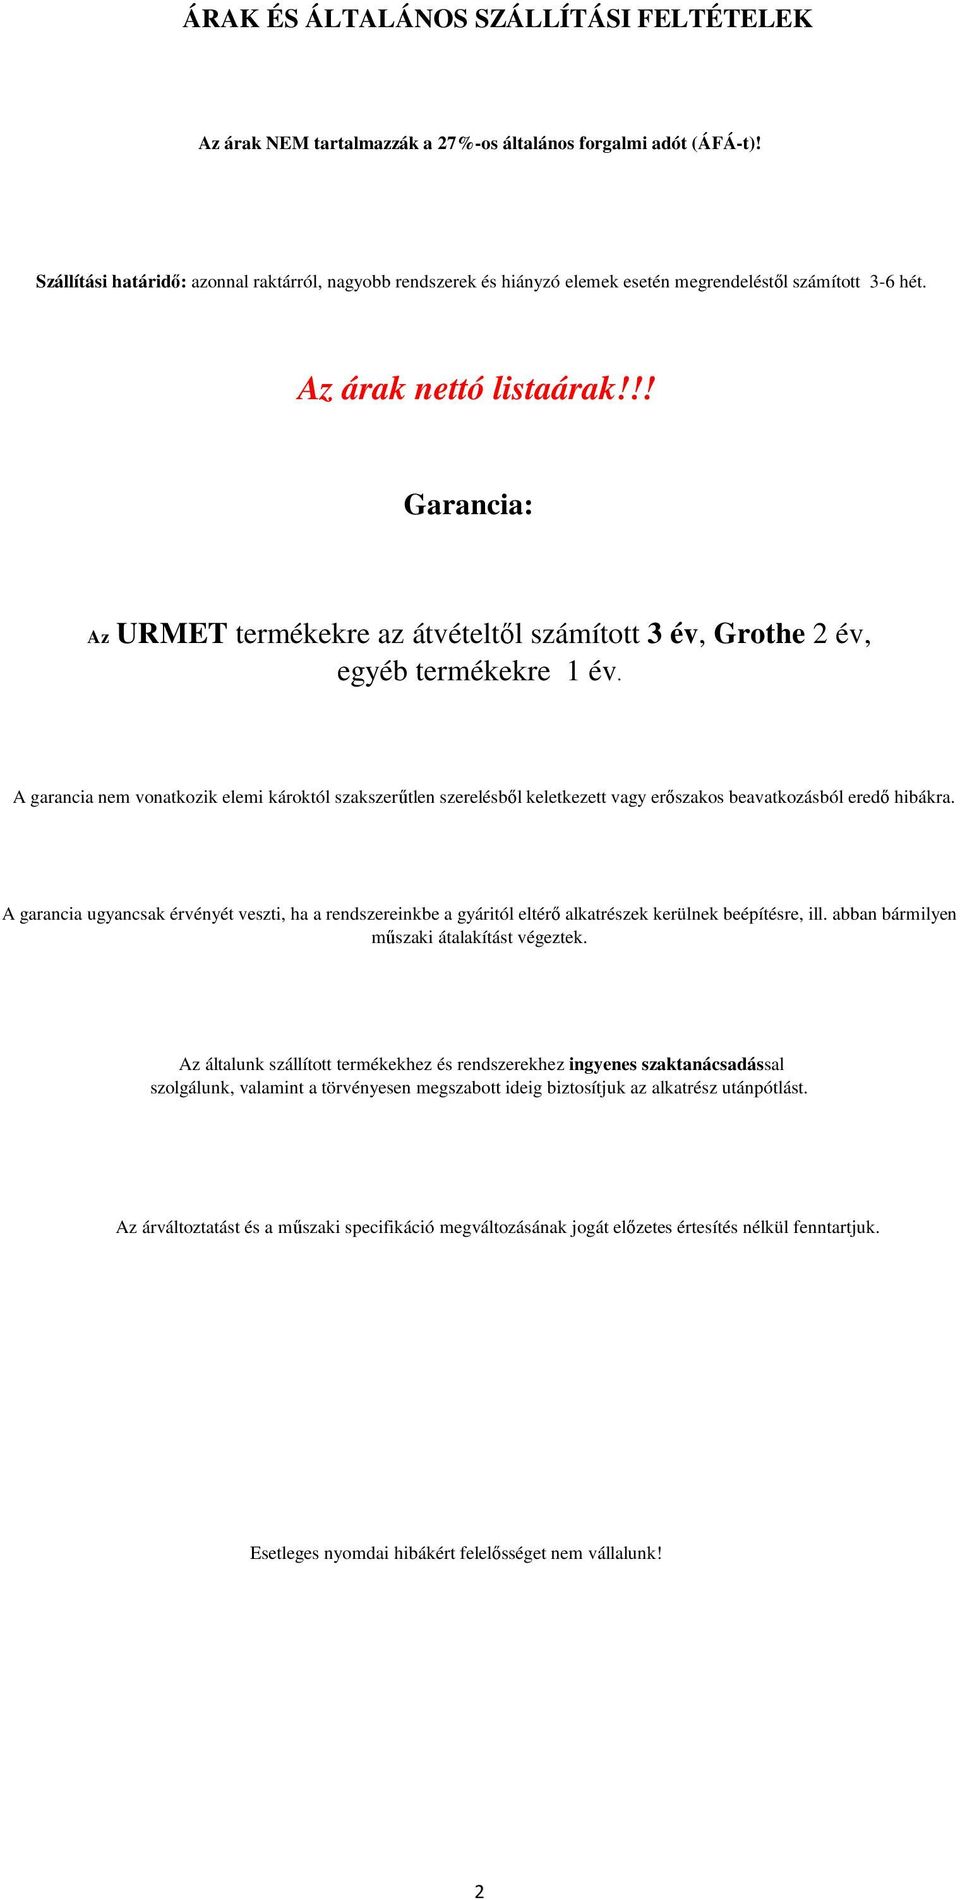 !! Garancia: Az URMET termékekre az átvételtől számított 3 év, Grothe 2 év, egyéb termékekre 1 év.